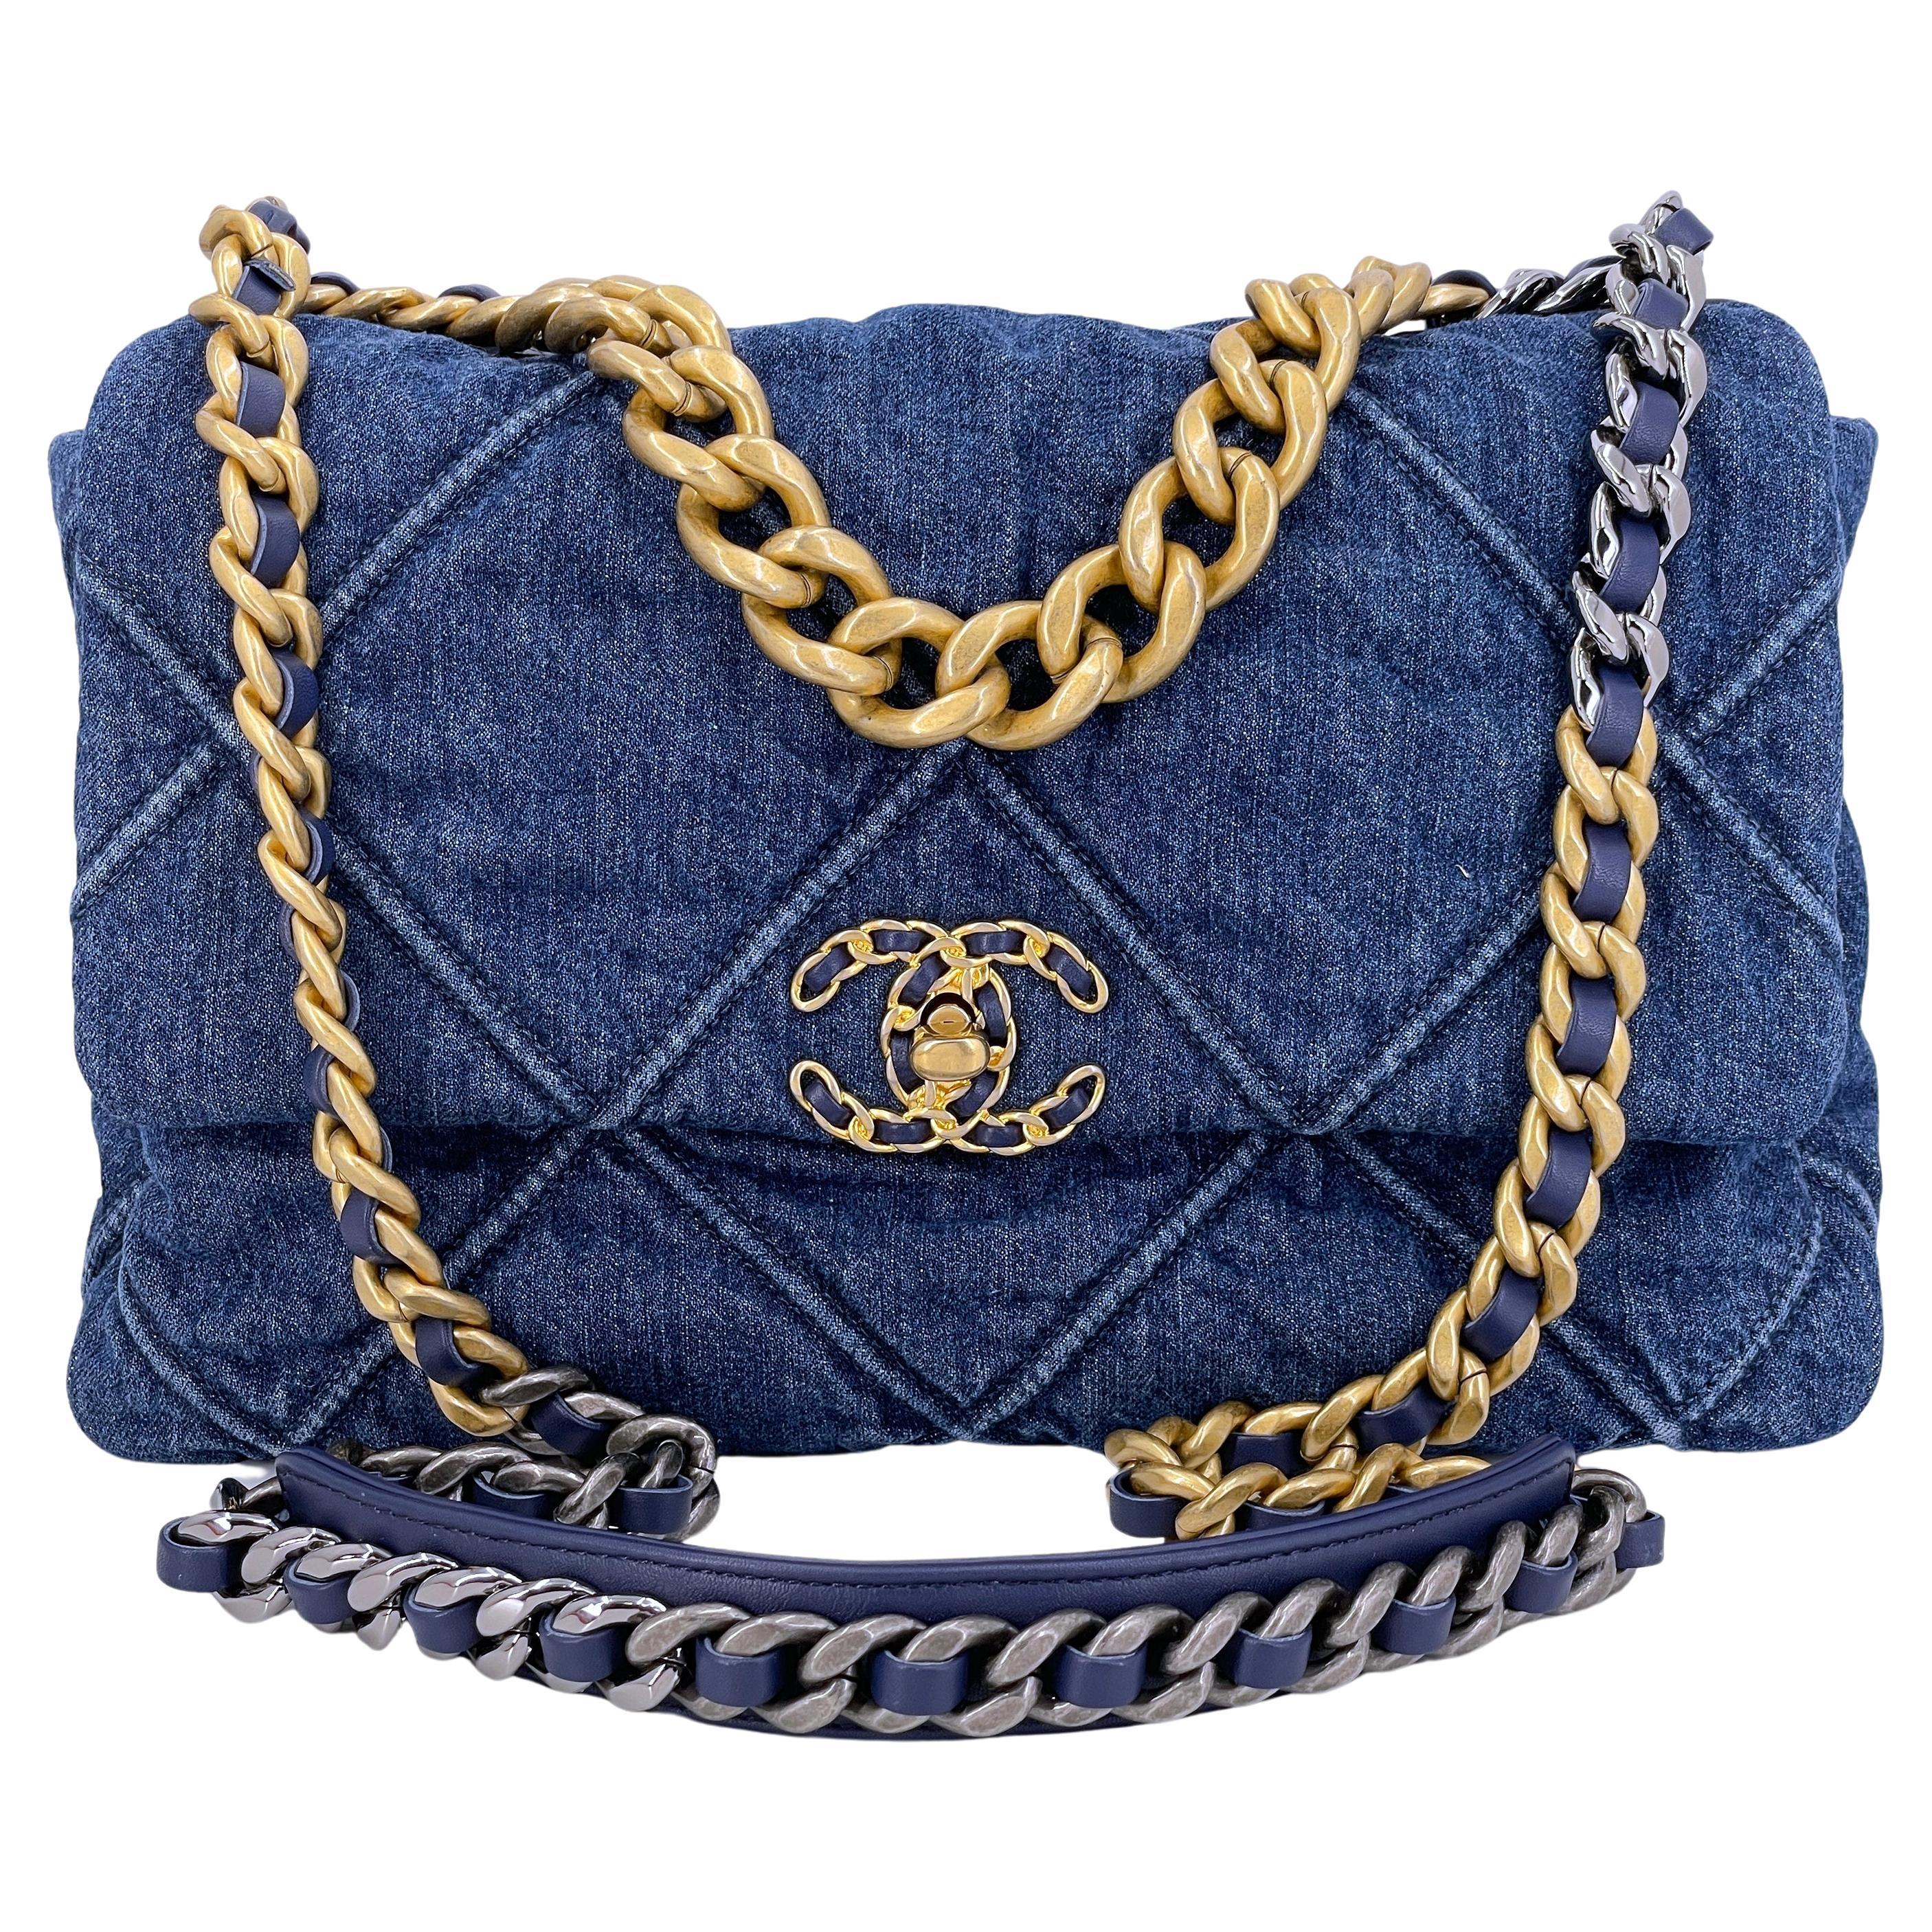 Chanel 19 Medium Denim Flap Bag  Blue Shoulder Bags Handbags  CHA792683   The RealReal